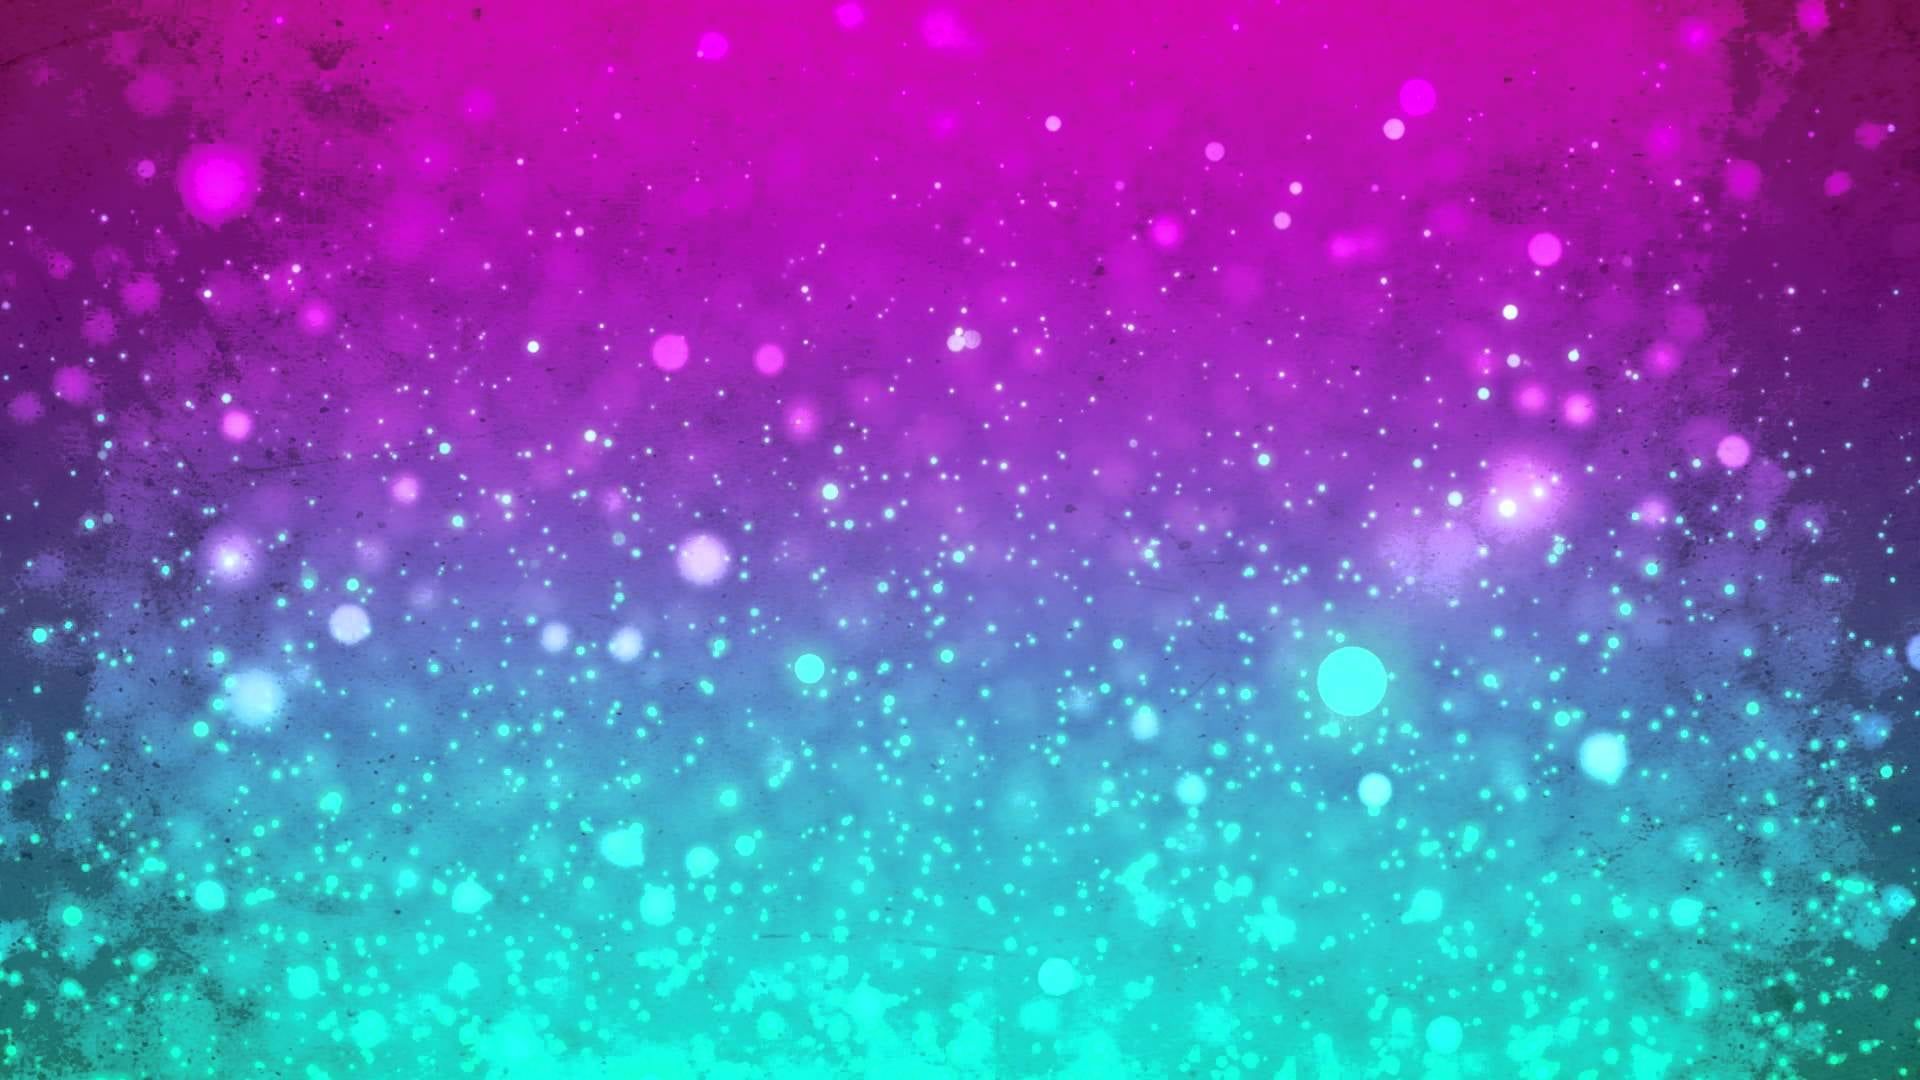 Teal Pink Wallpaper, HD Teal Pink Background on WallpaperBat